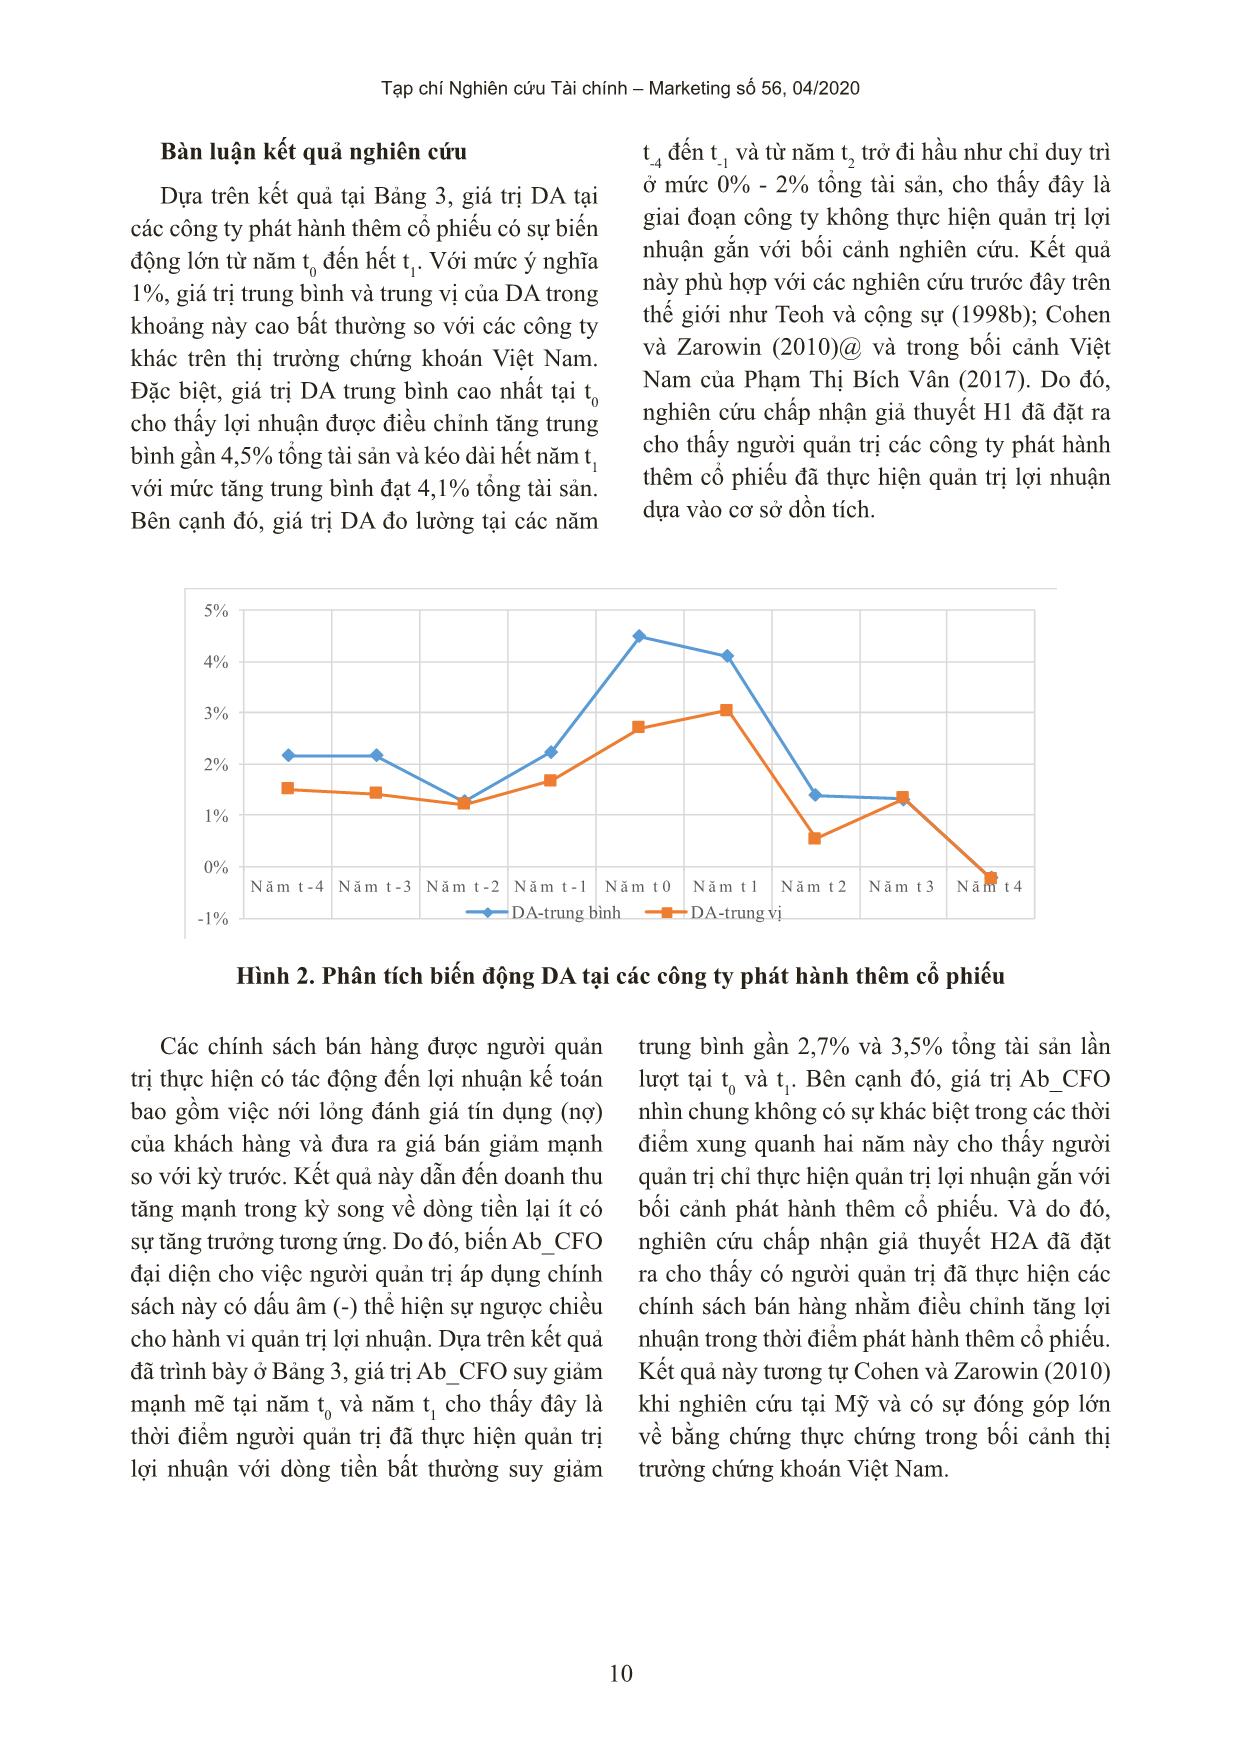 Quản trị lợi nhuận tại các công ty phát hành thêm cổ phiếu trên thị trường chứng khoán Việt Nam trang 10